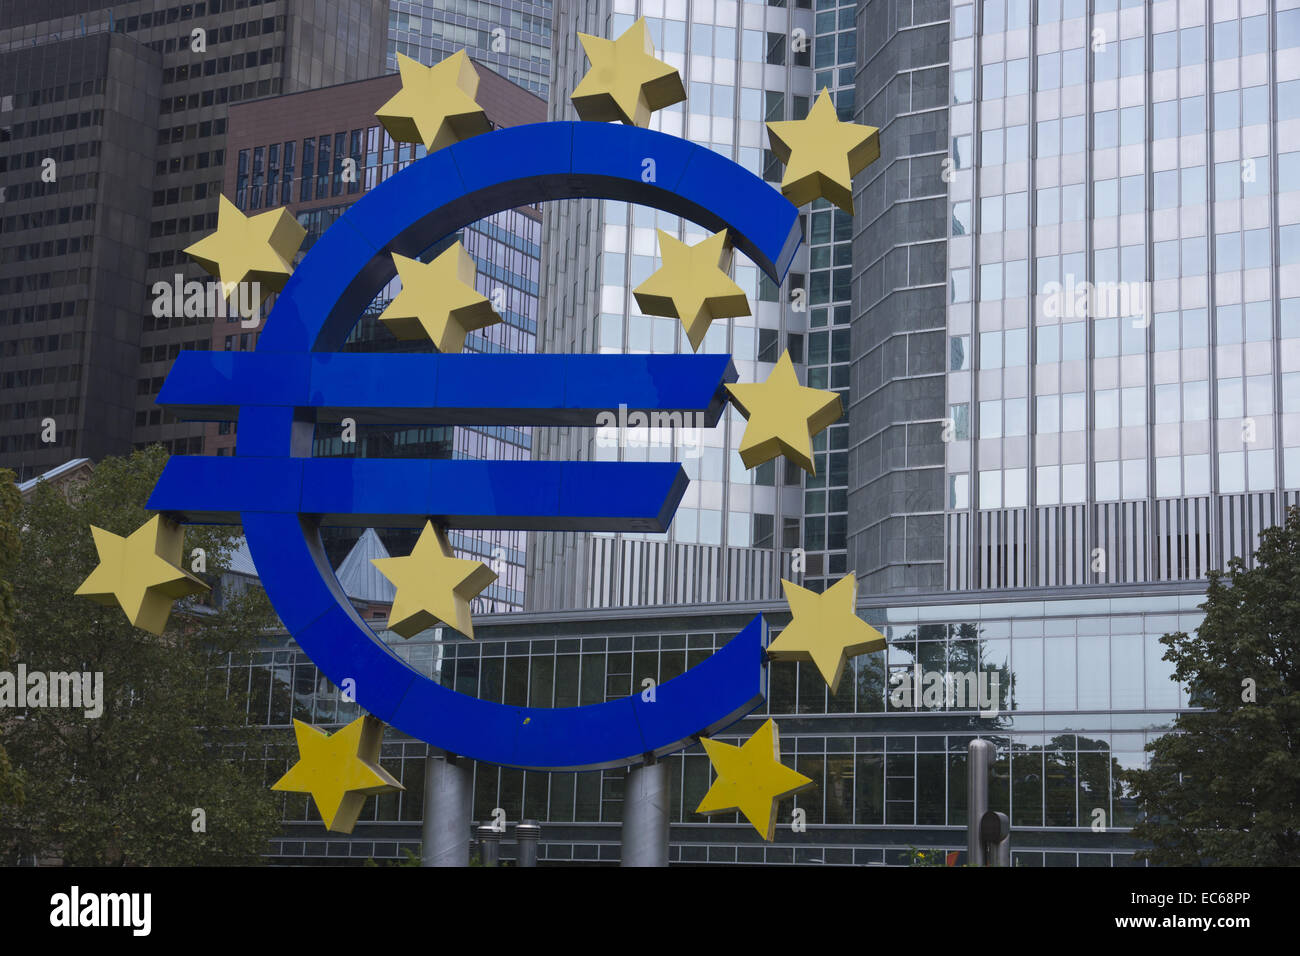 Symbole de l'euro, l'Eurotower, BCE, Banque centrale européenne, du quartier financier, Frankfurt am Main, Hesse, Germany, Europe Banque D'Images